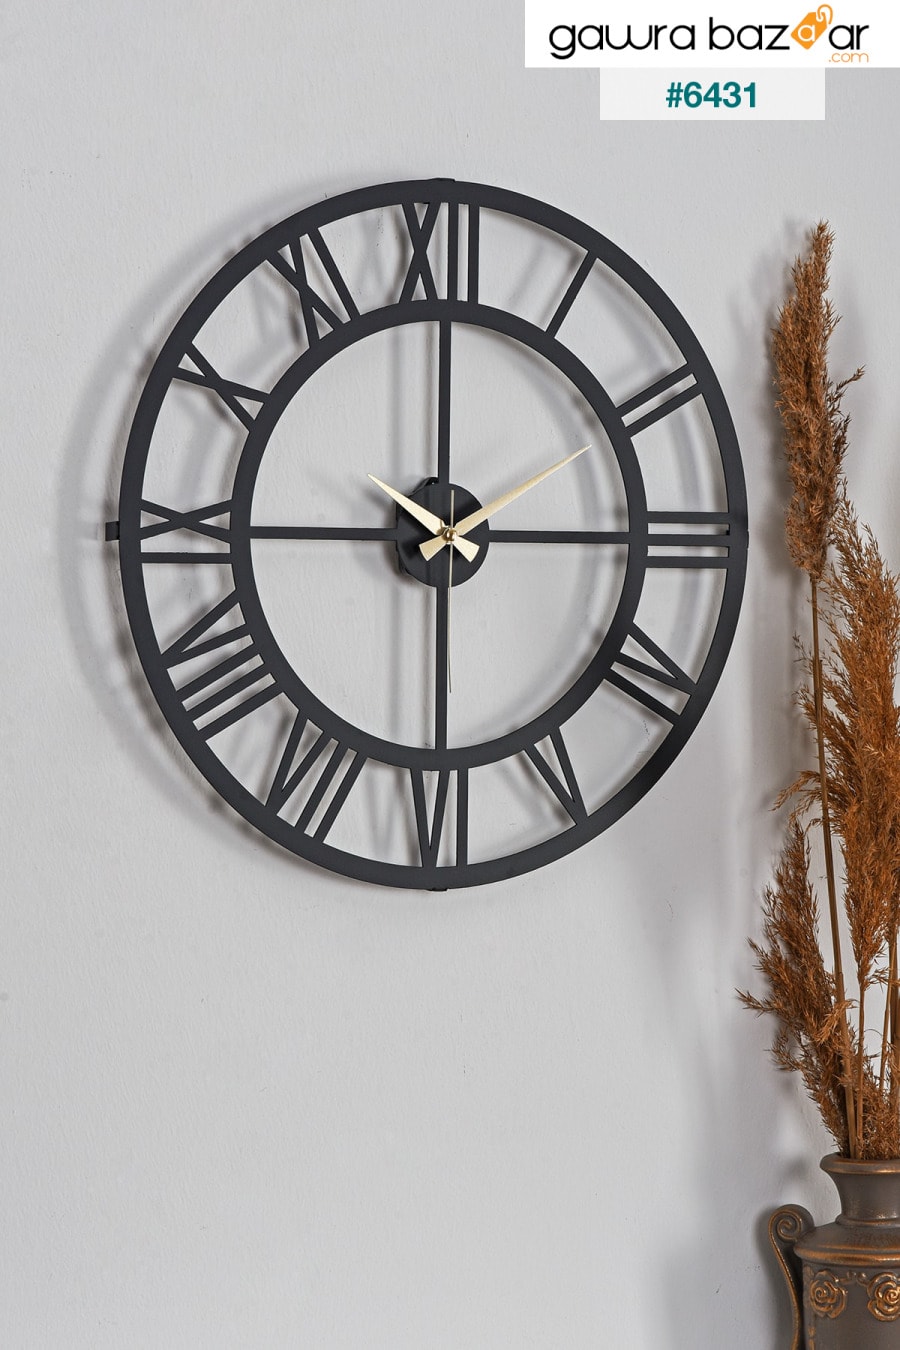 مويكا ساعة حائط معدنية بأرقام رومانية سوداء 50x50 سم Mds-50 Muyika Design 0